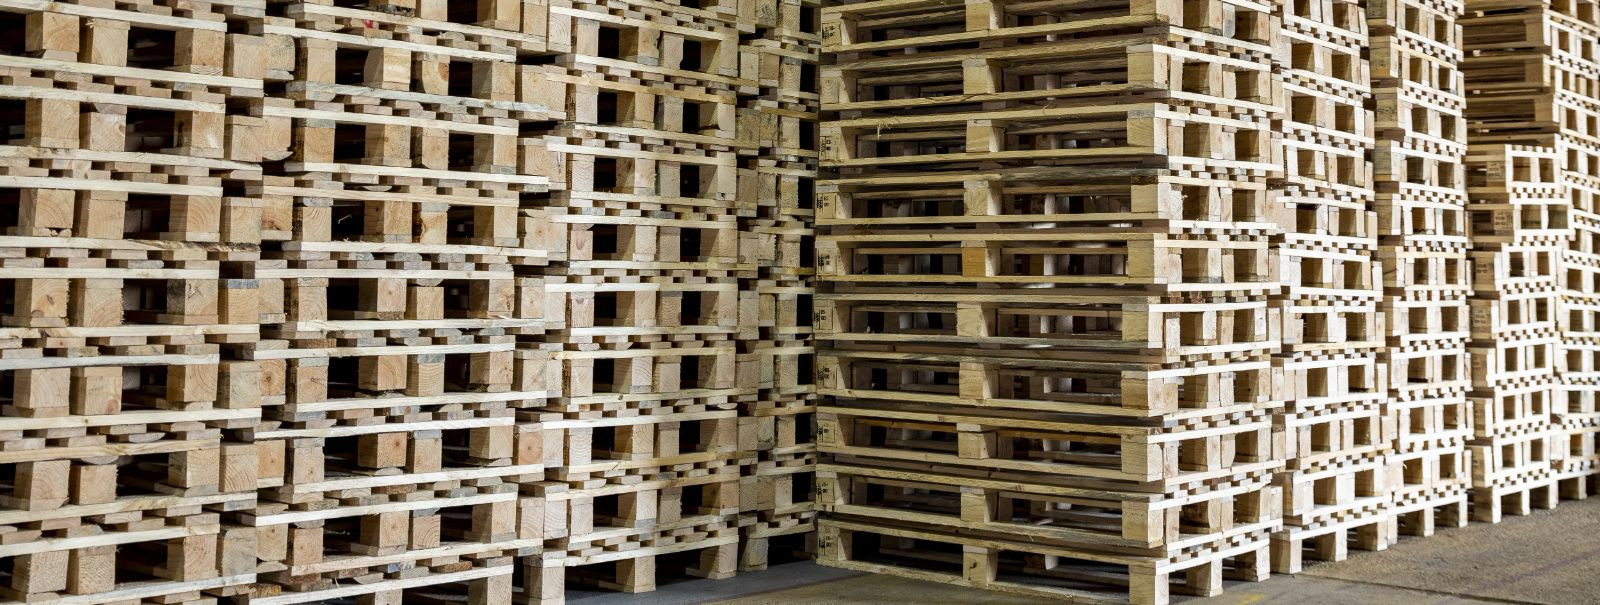 Sissejuhatus  Osaühing Kastoram Wood registreeriti Äriregistris 19.04.2011.aastal. Osaühingu põhitegevuseks on puittaara ja puidust kaubaaluste tootmine.  Tulud